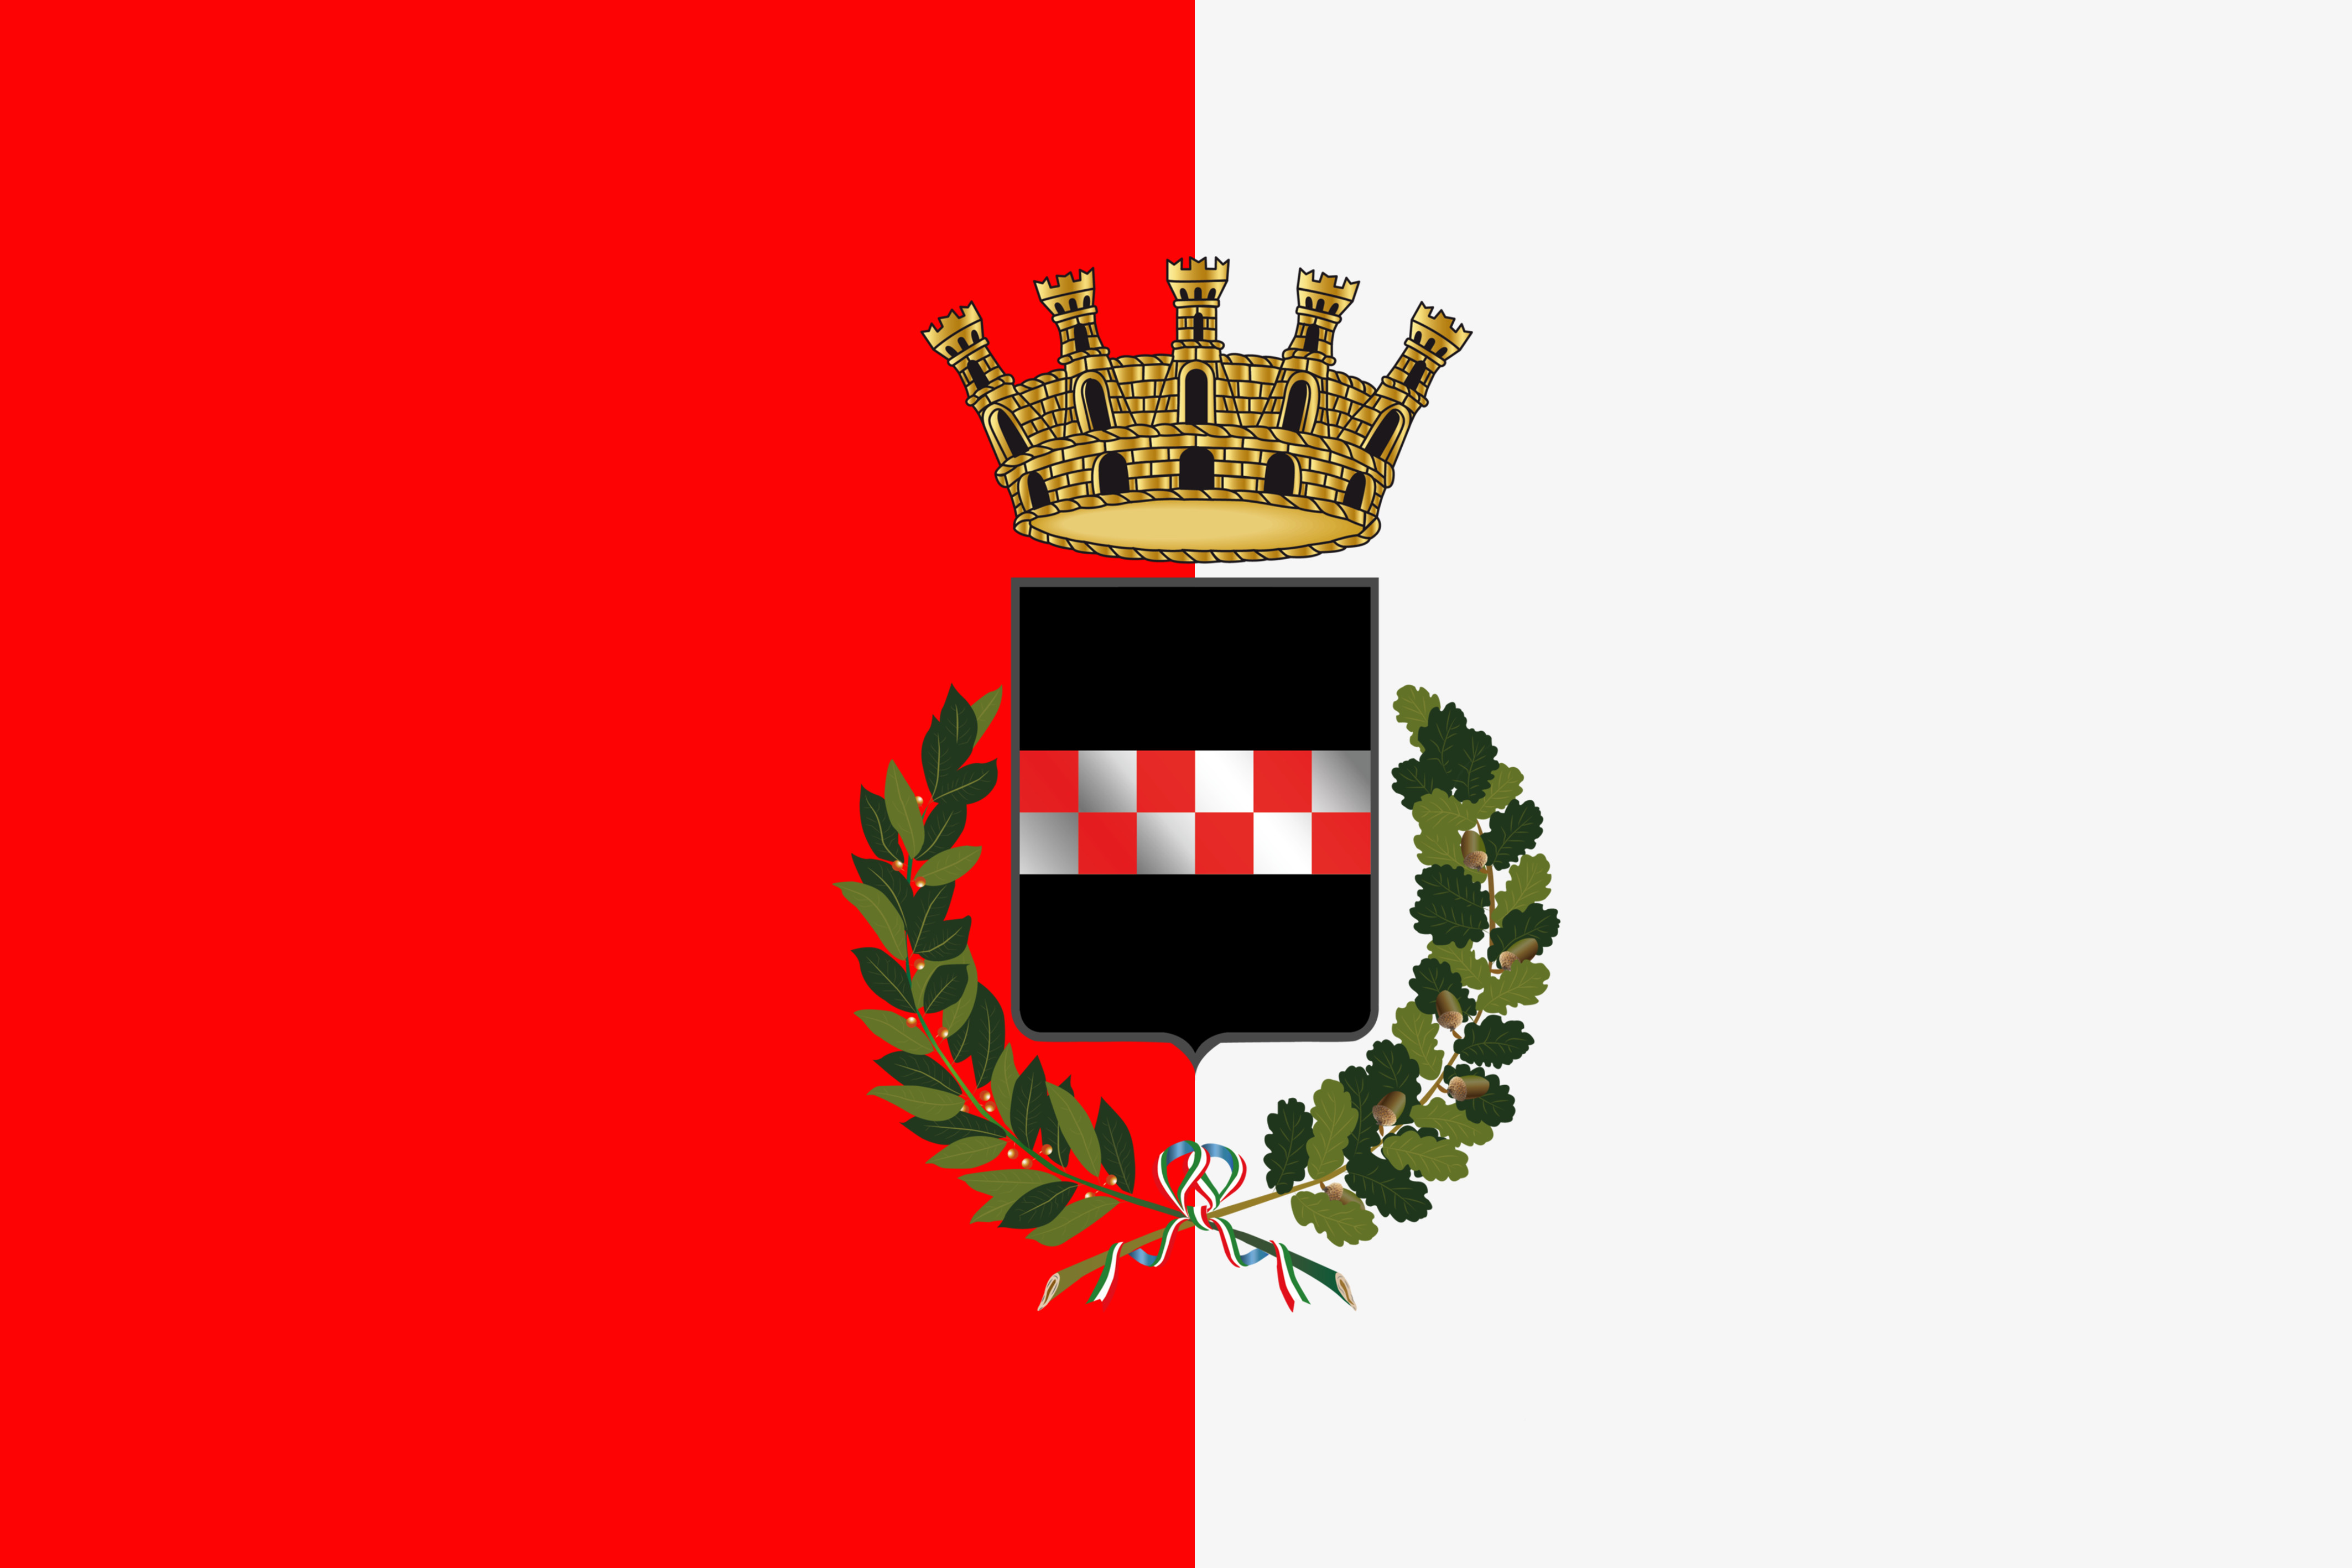 Bozzetto della bandiera comunale